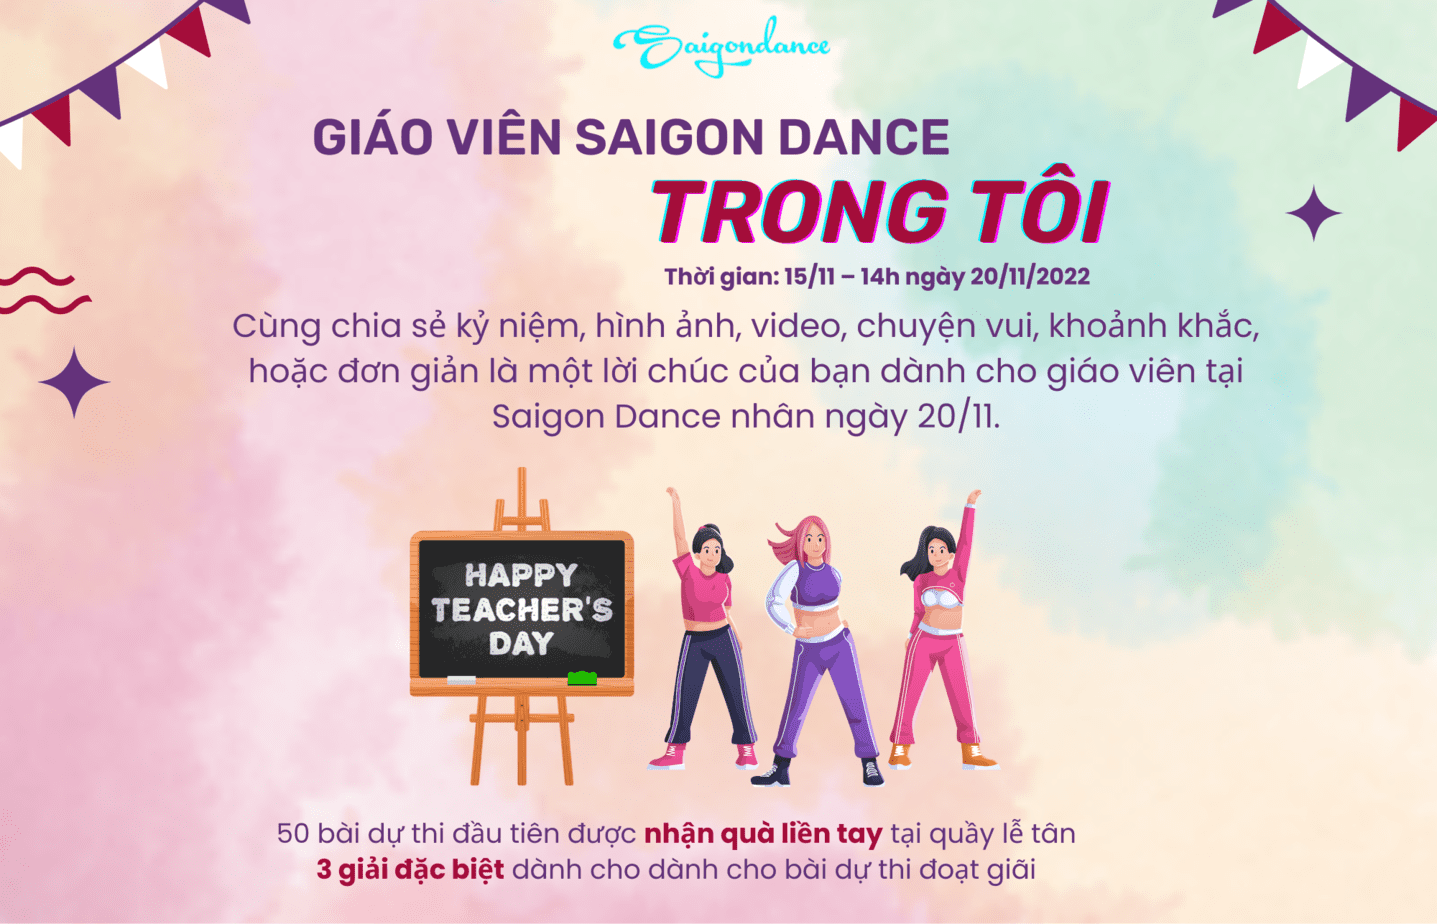 Nhận quà liền tay cùng Cuộc thi "Giáo viên Saigon Dance trong tôi" 17